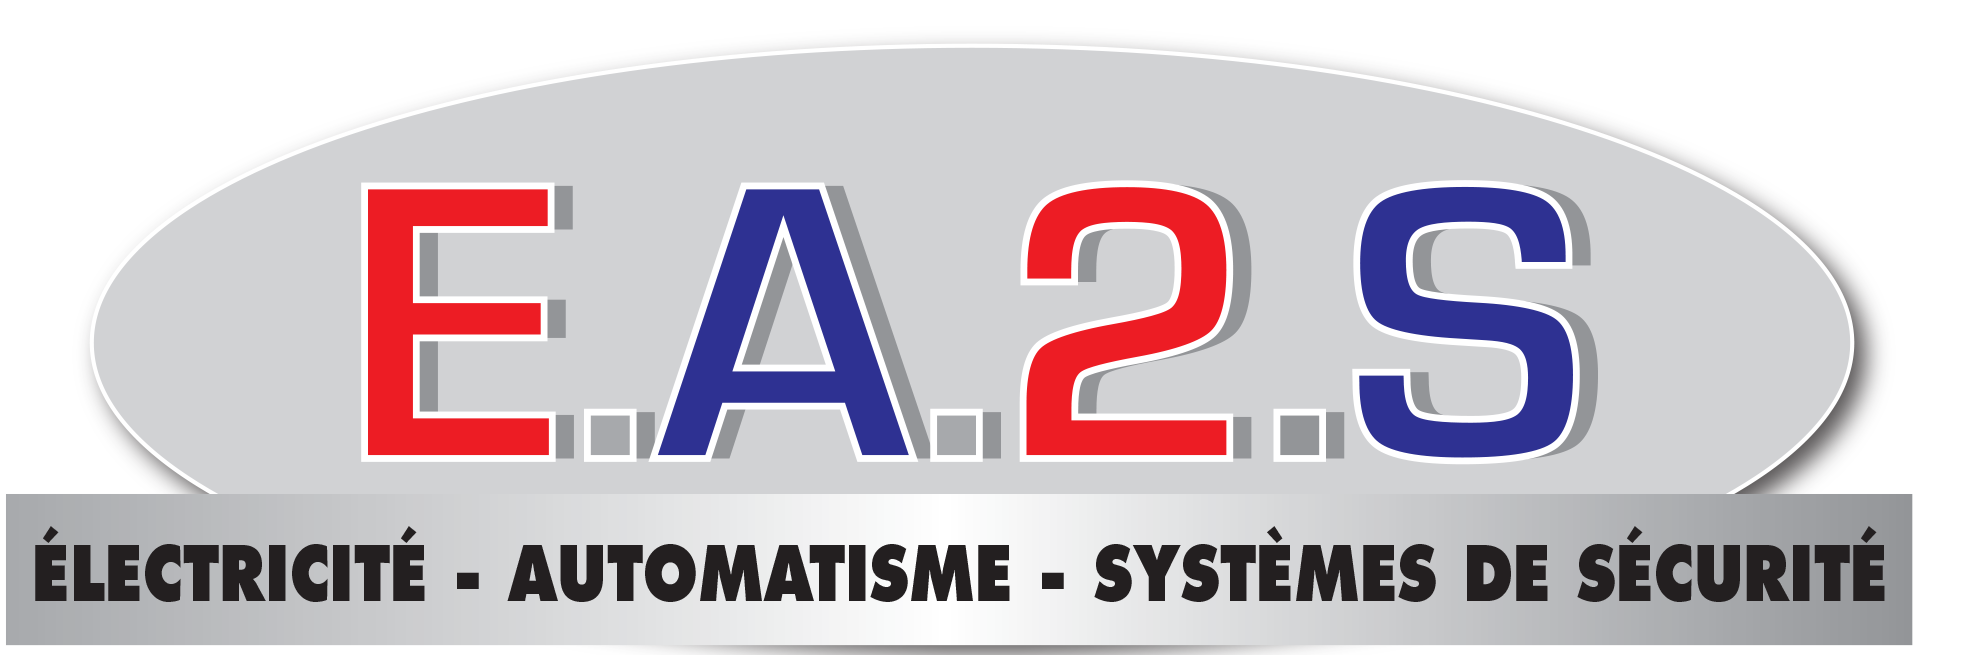 logo ea2s